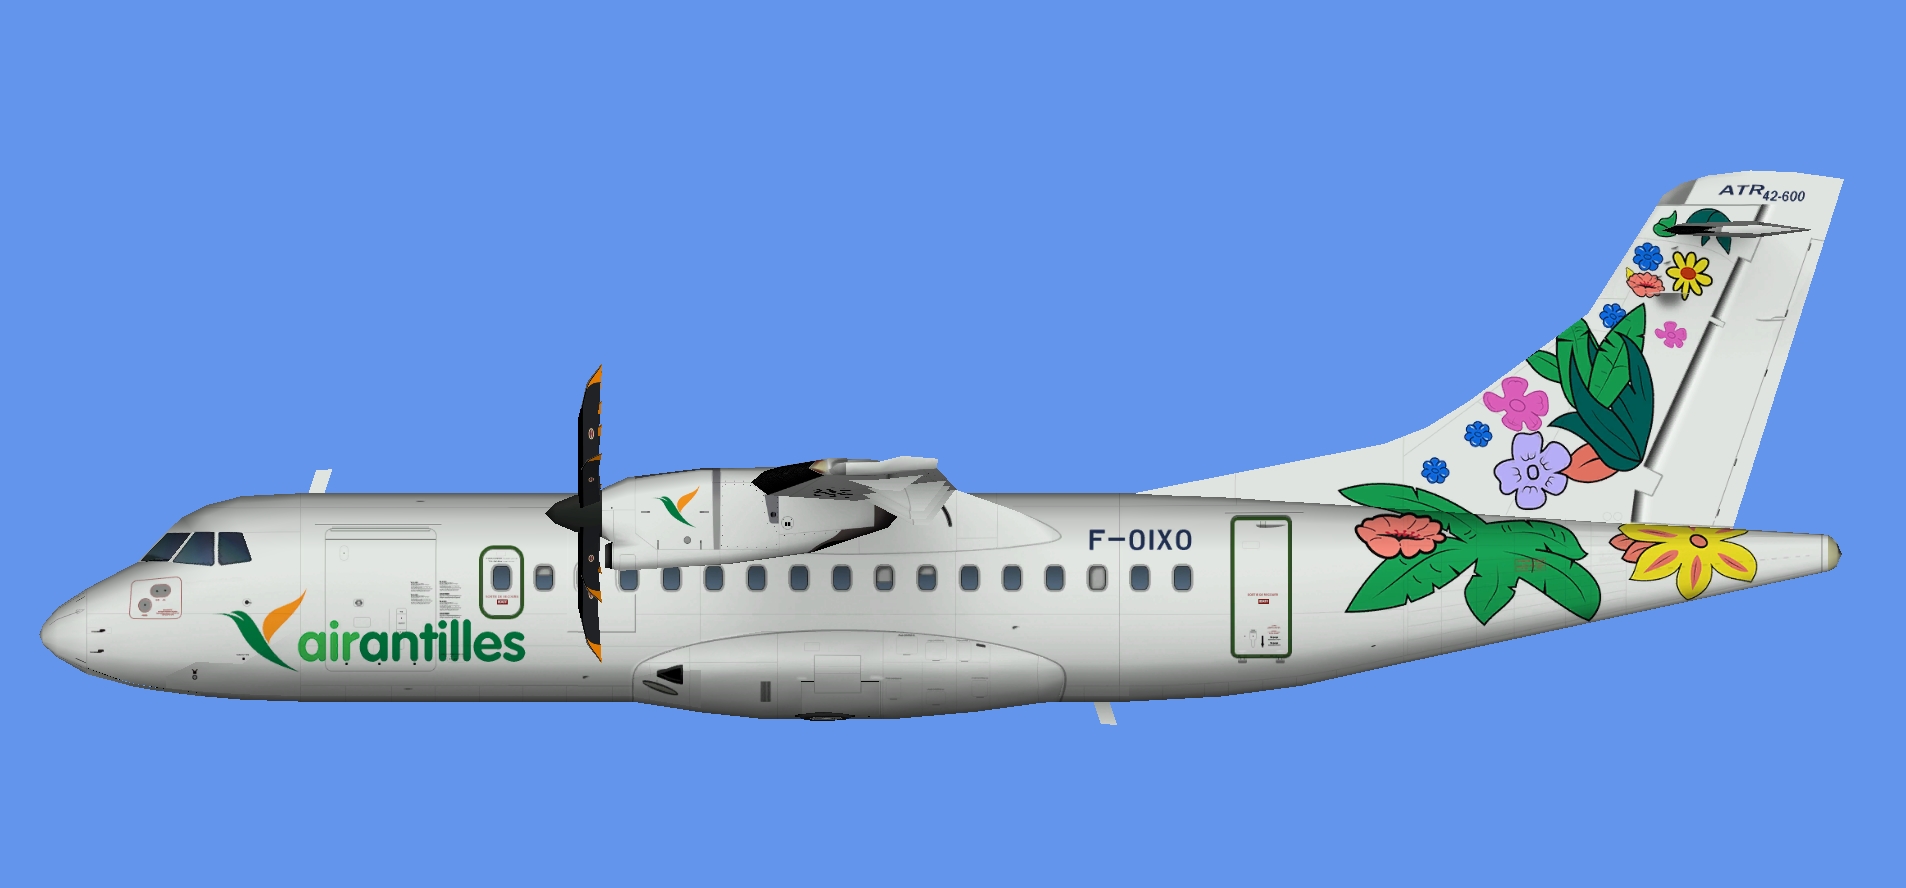 Air Antilles Express ATR 42-600